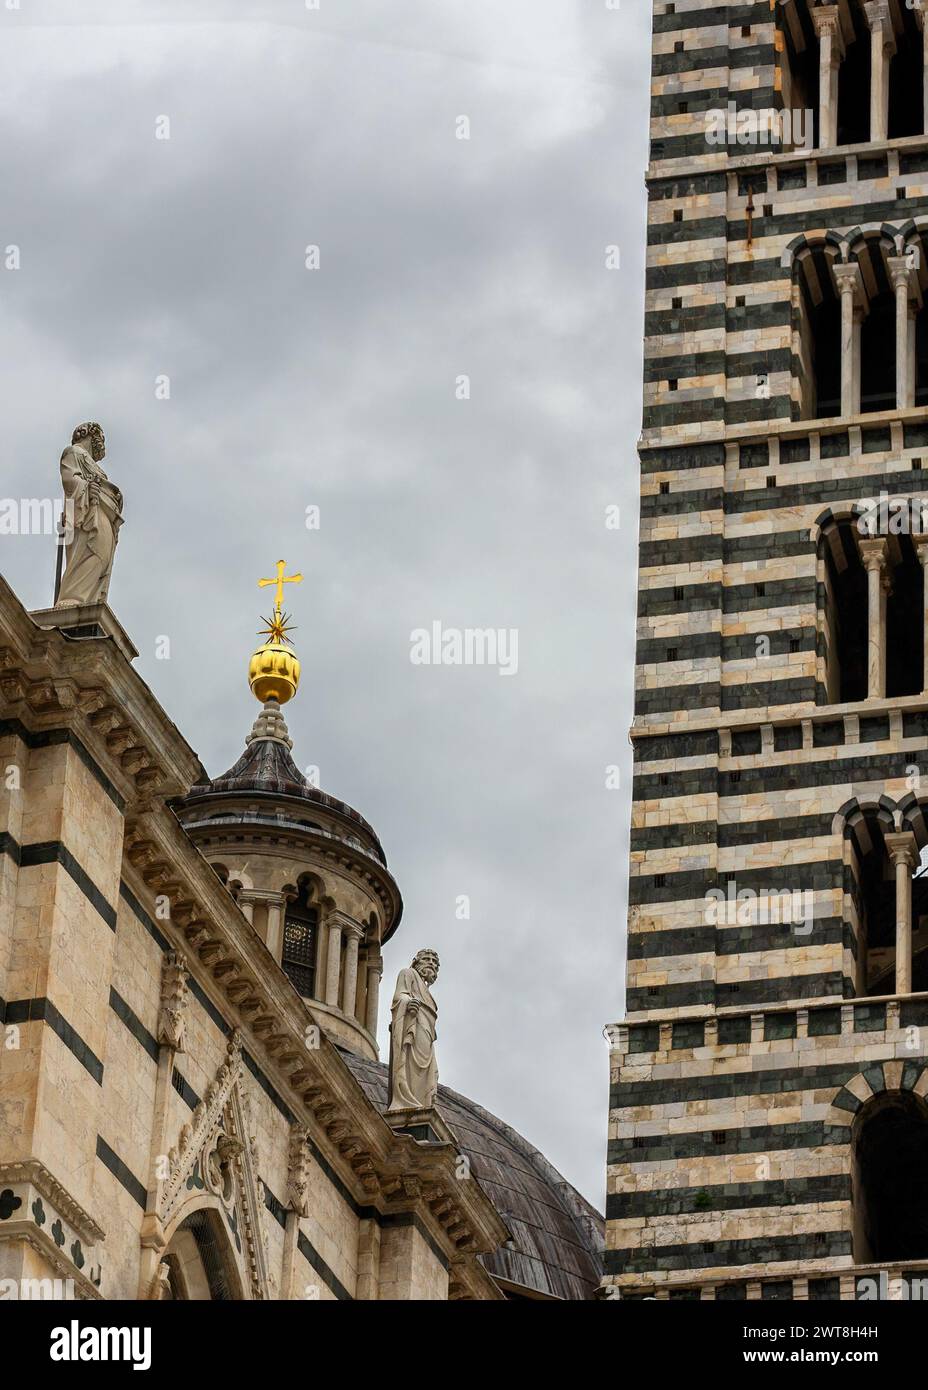 Dettaglio architettonico della Cattedrale di Siena (Duomo), con le sue famose strisce di marmo bianco e nero del campanile, le sculture e una croce d'oro sulla sommità Foto Stock